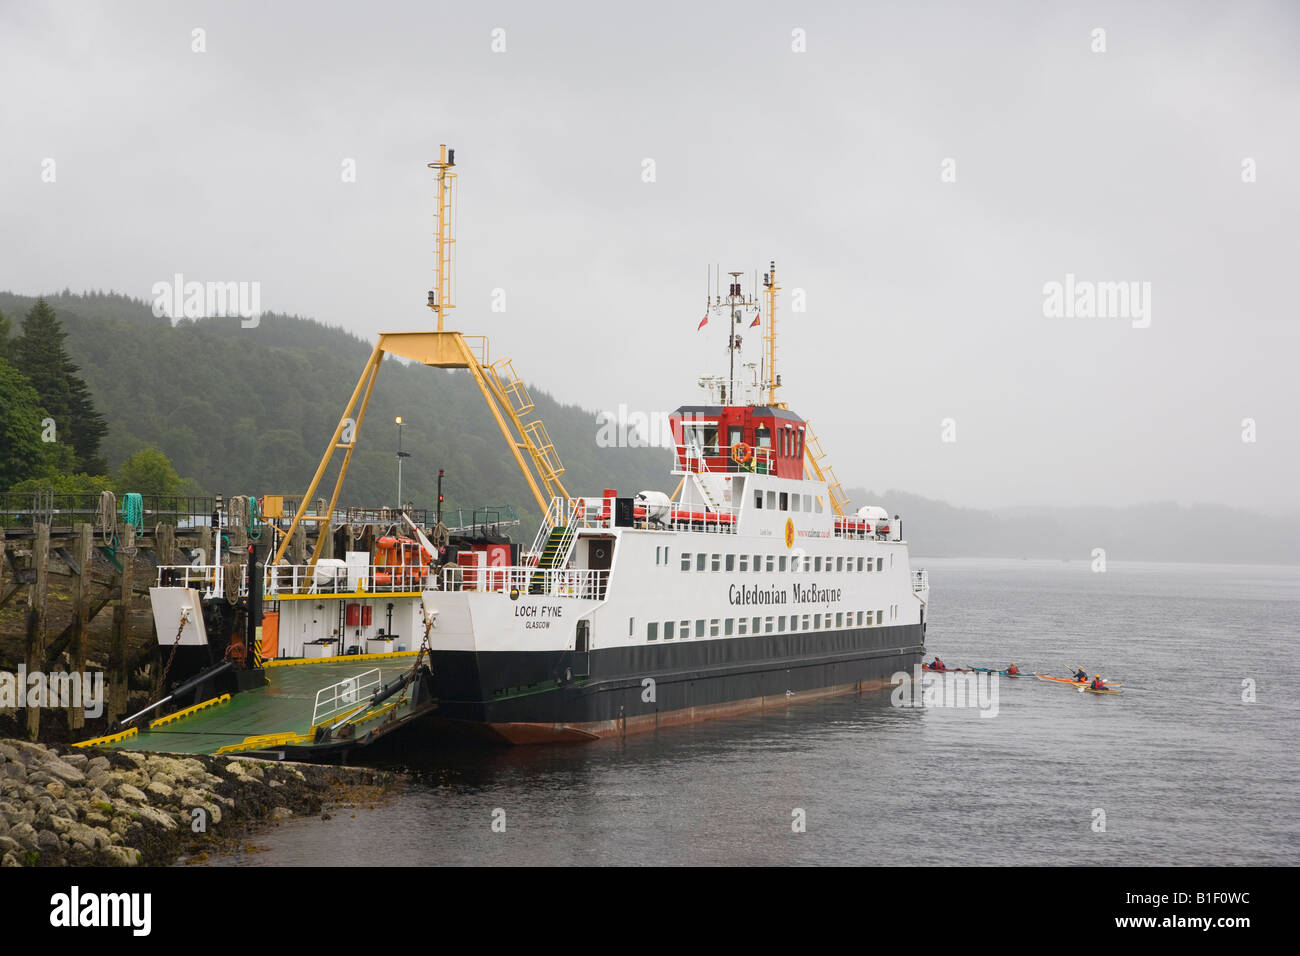 Mull ferry from Lochaline to Fishnish Stock Photo: 18155016 - Alamy